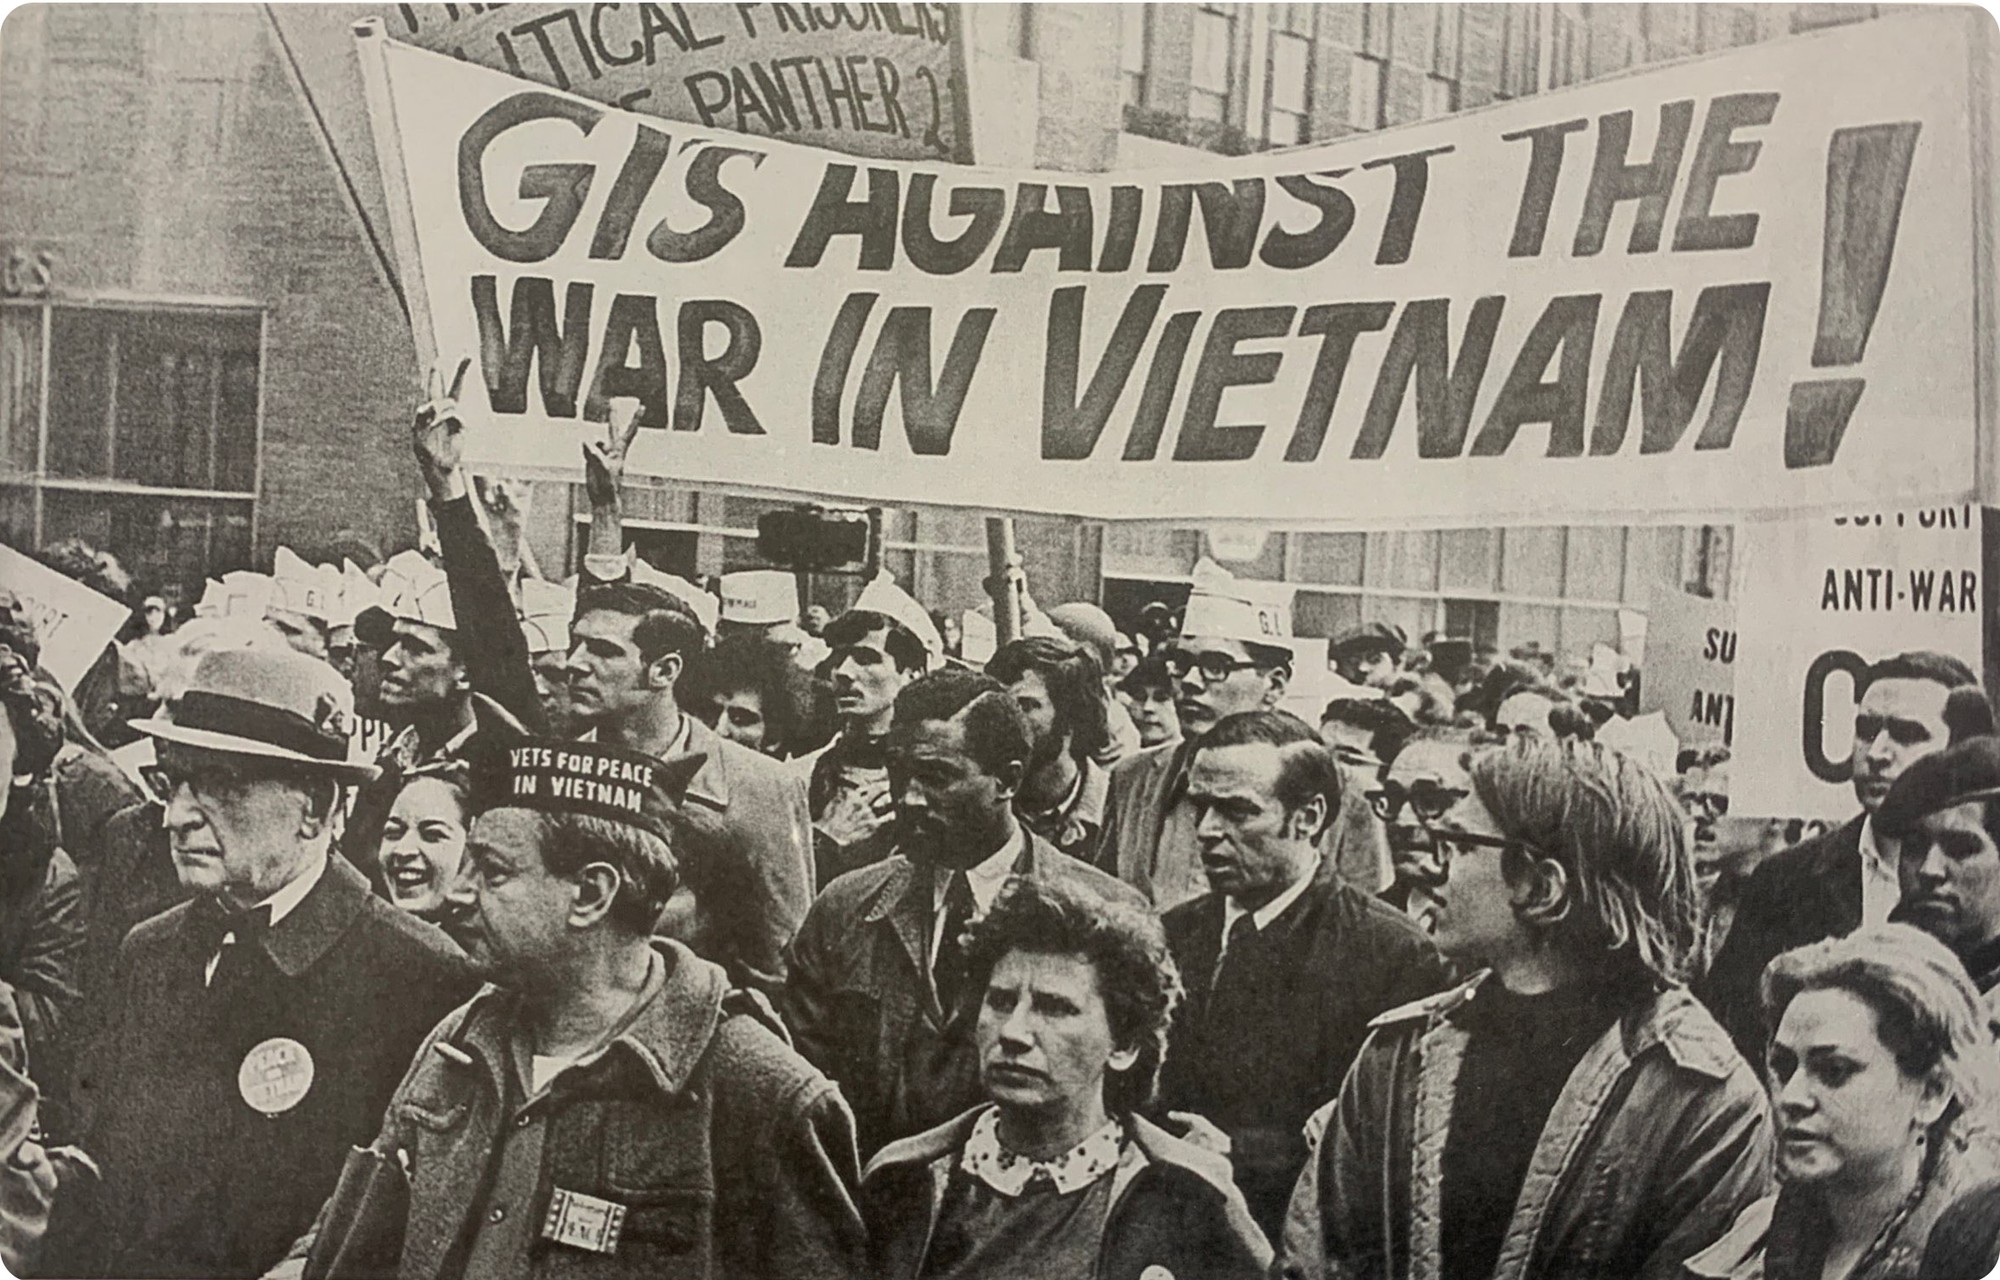 [Ảnh] Thế giới đoàn kết, ủng hộ Việt Nam trong cuộc đấu tranh chính nghĩa